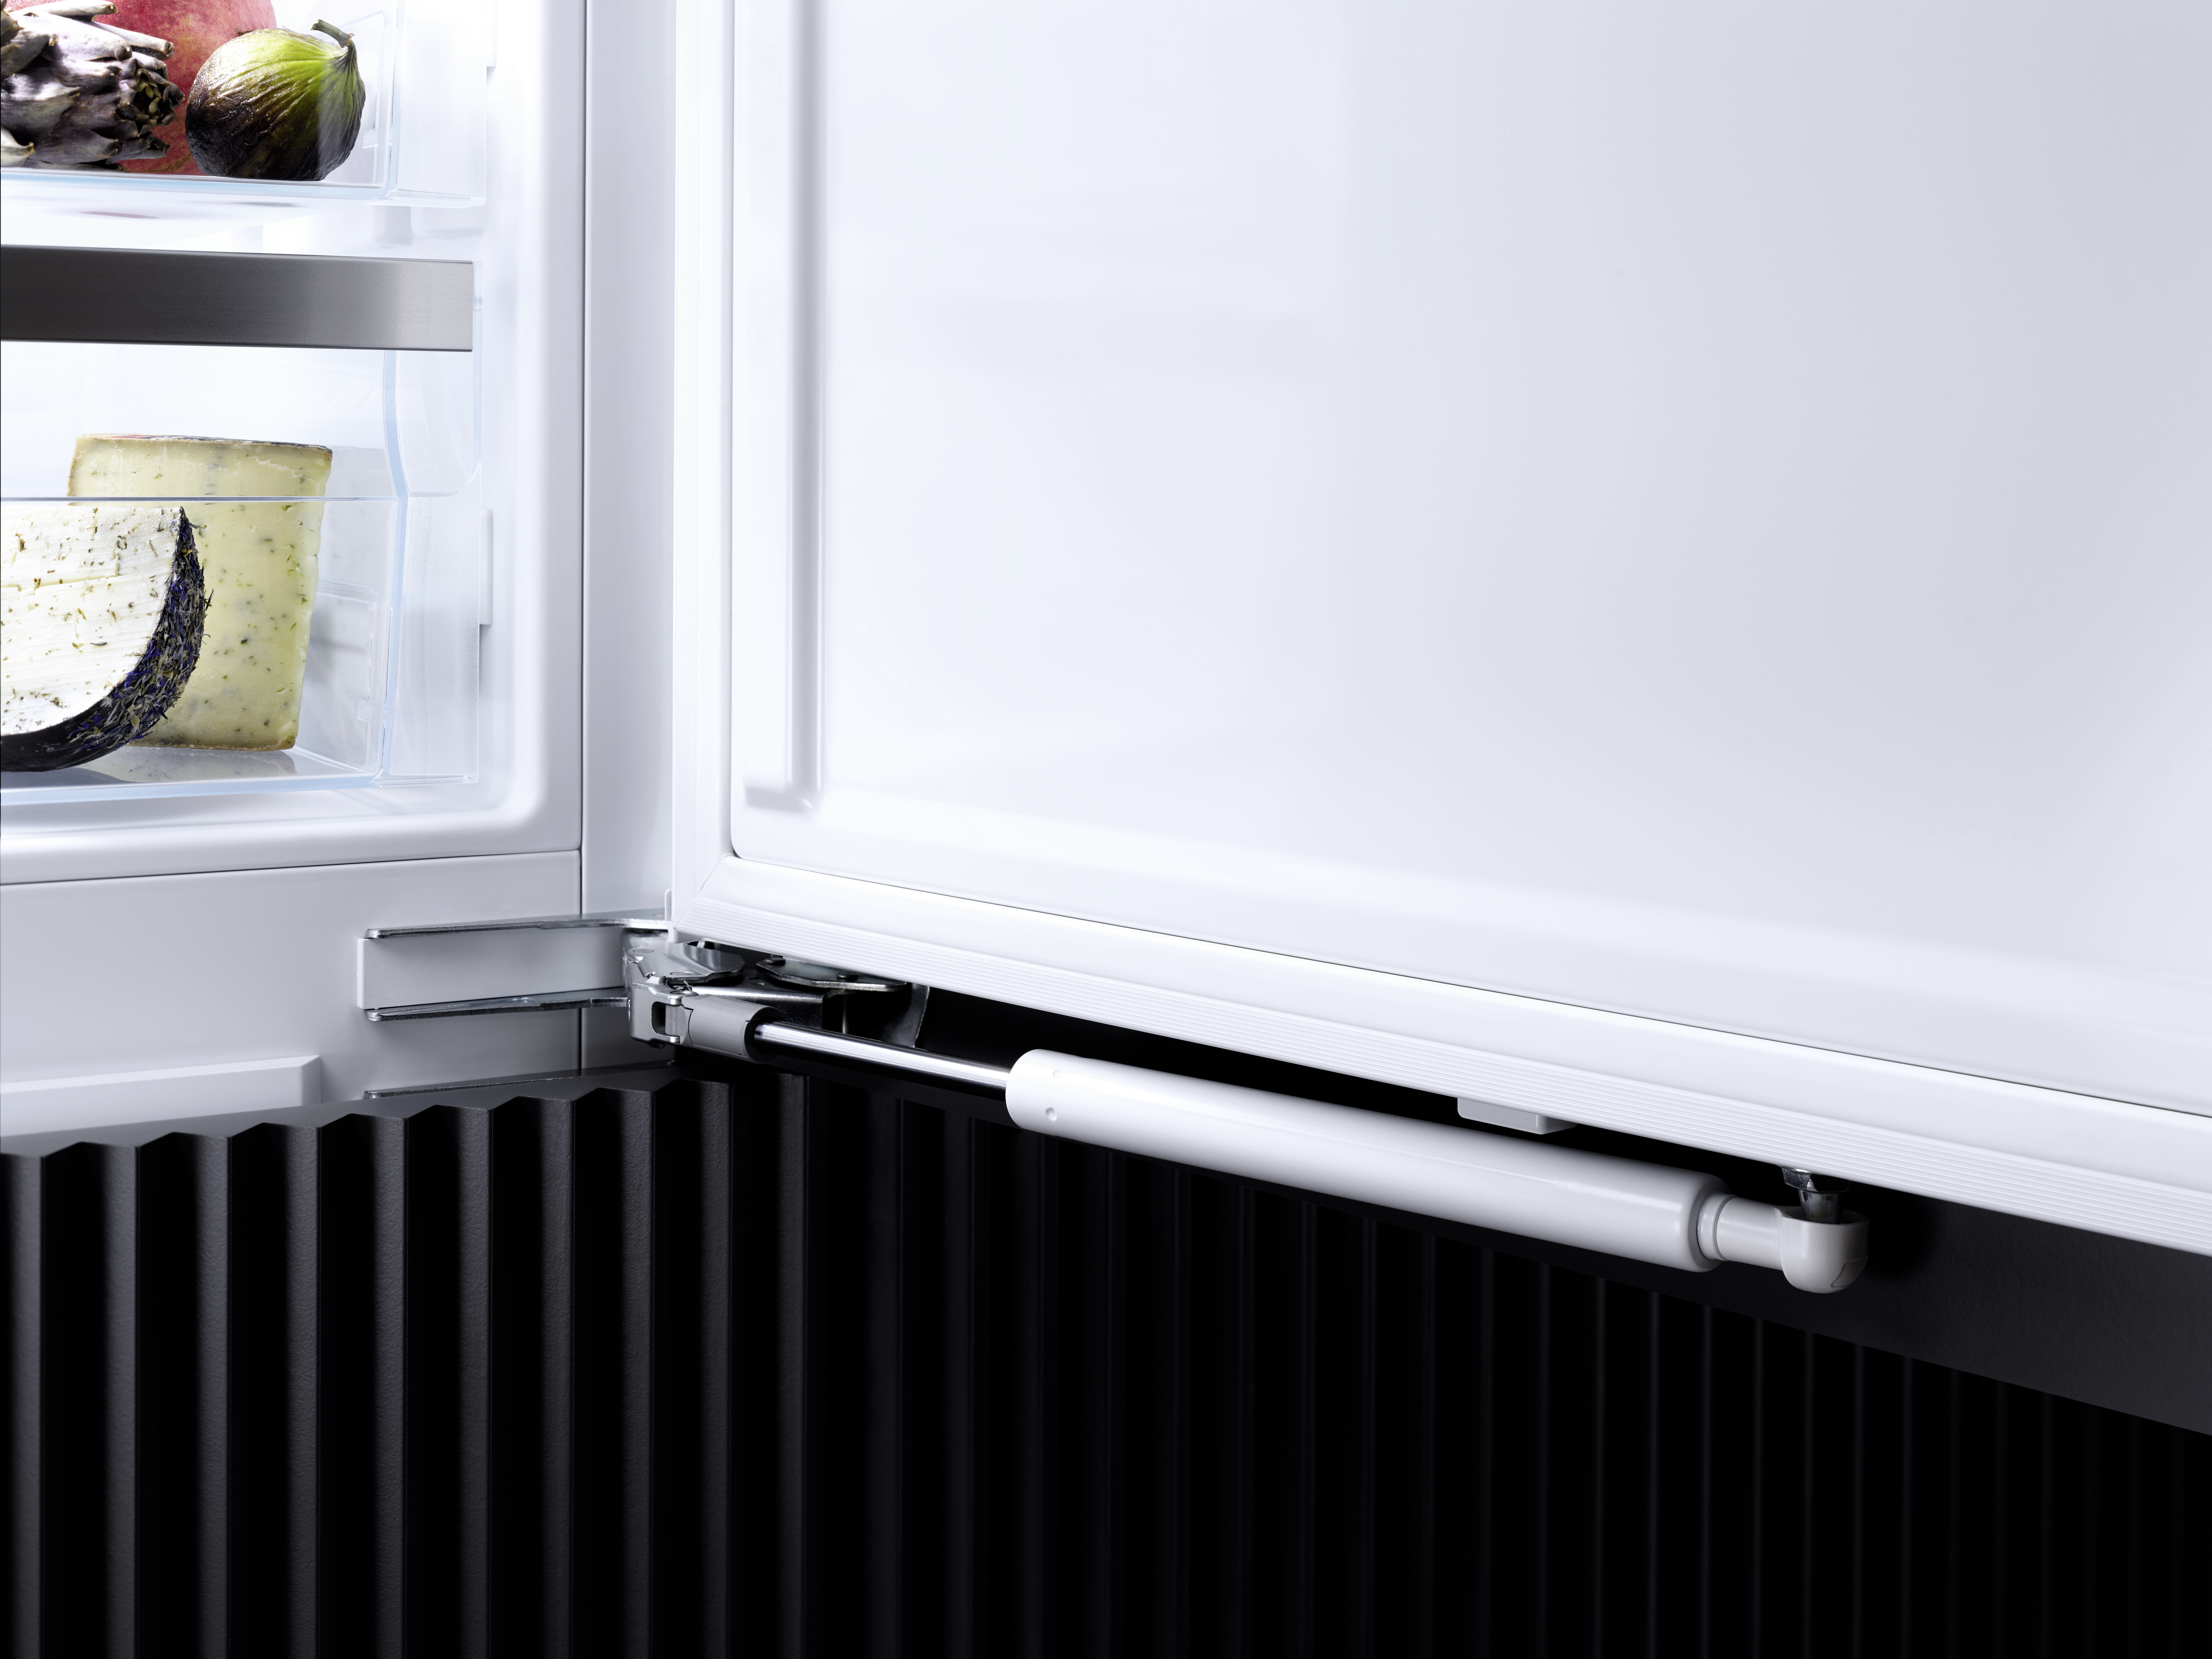 D D Miele / Gefrierfach mit Einbau-Kühlschrank K EURONICS 7318 |